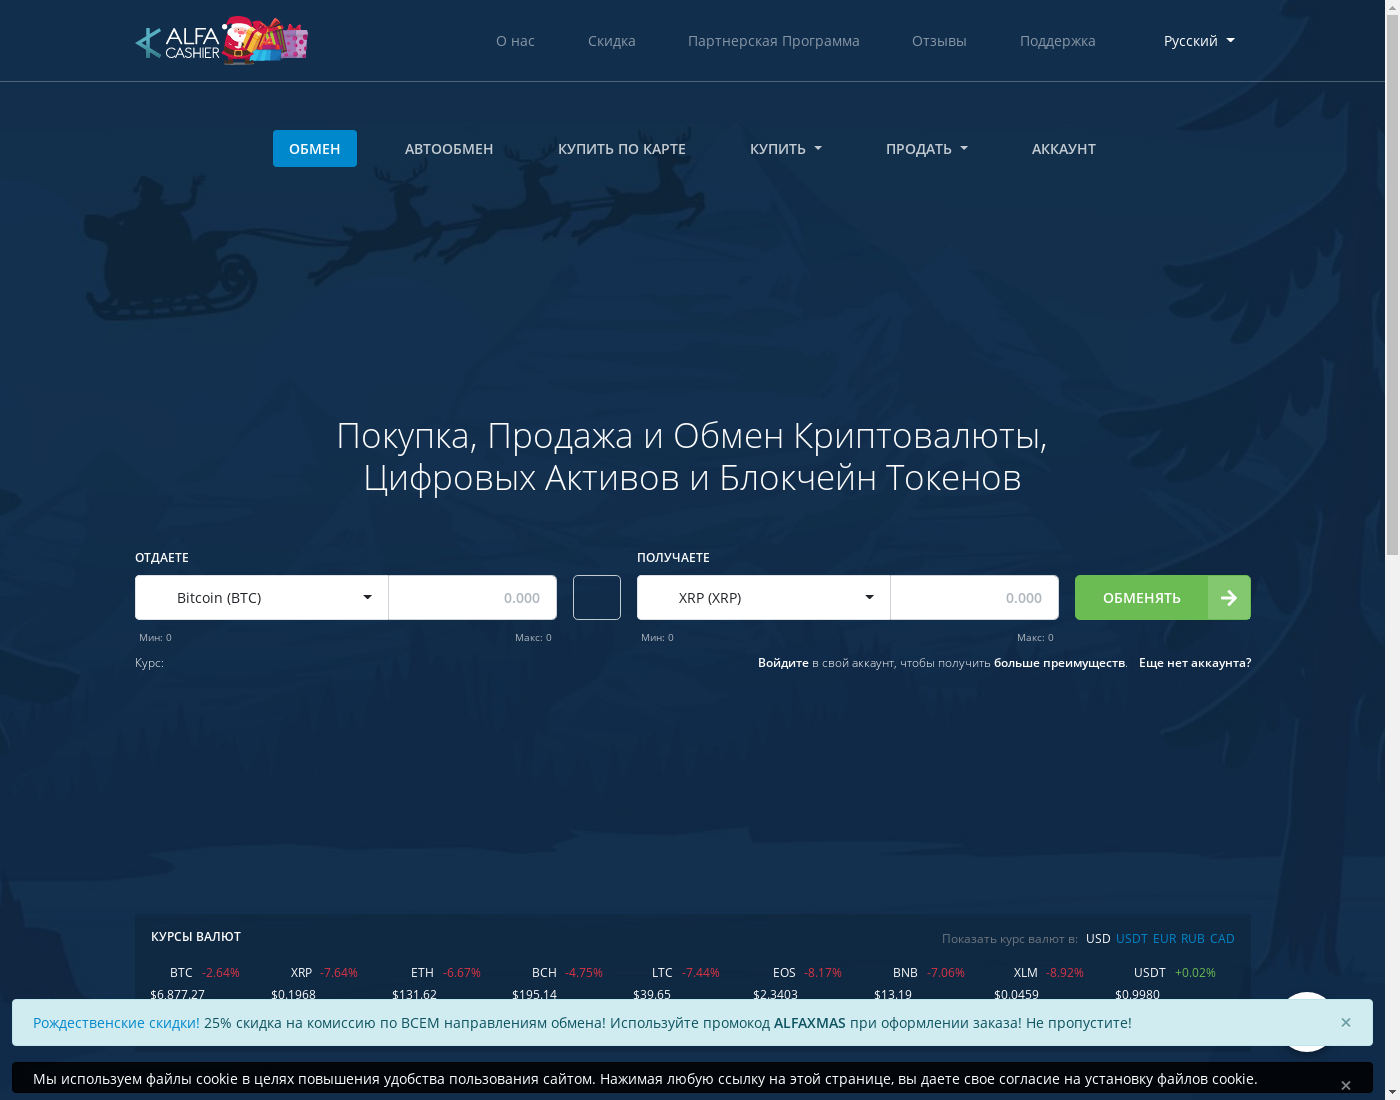 AlfaCashier интерфейс пользователя: домашняя страничка на языке — Русский